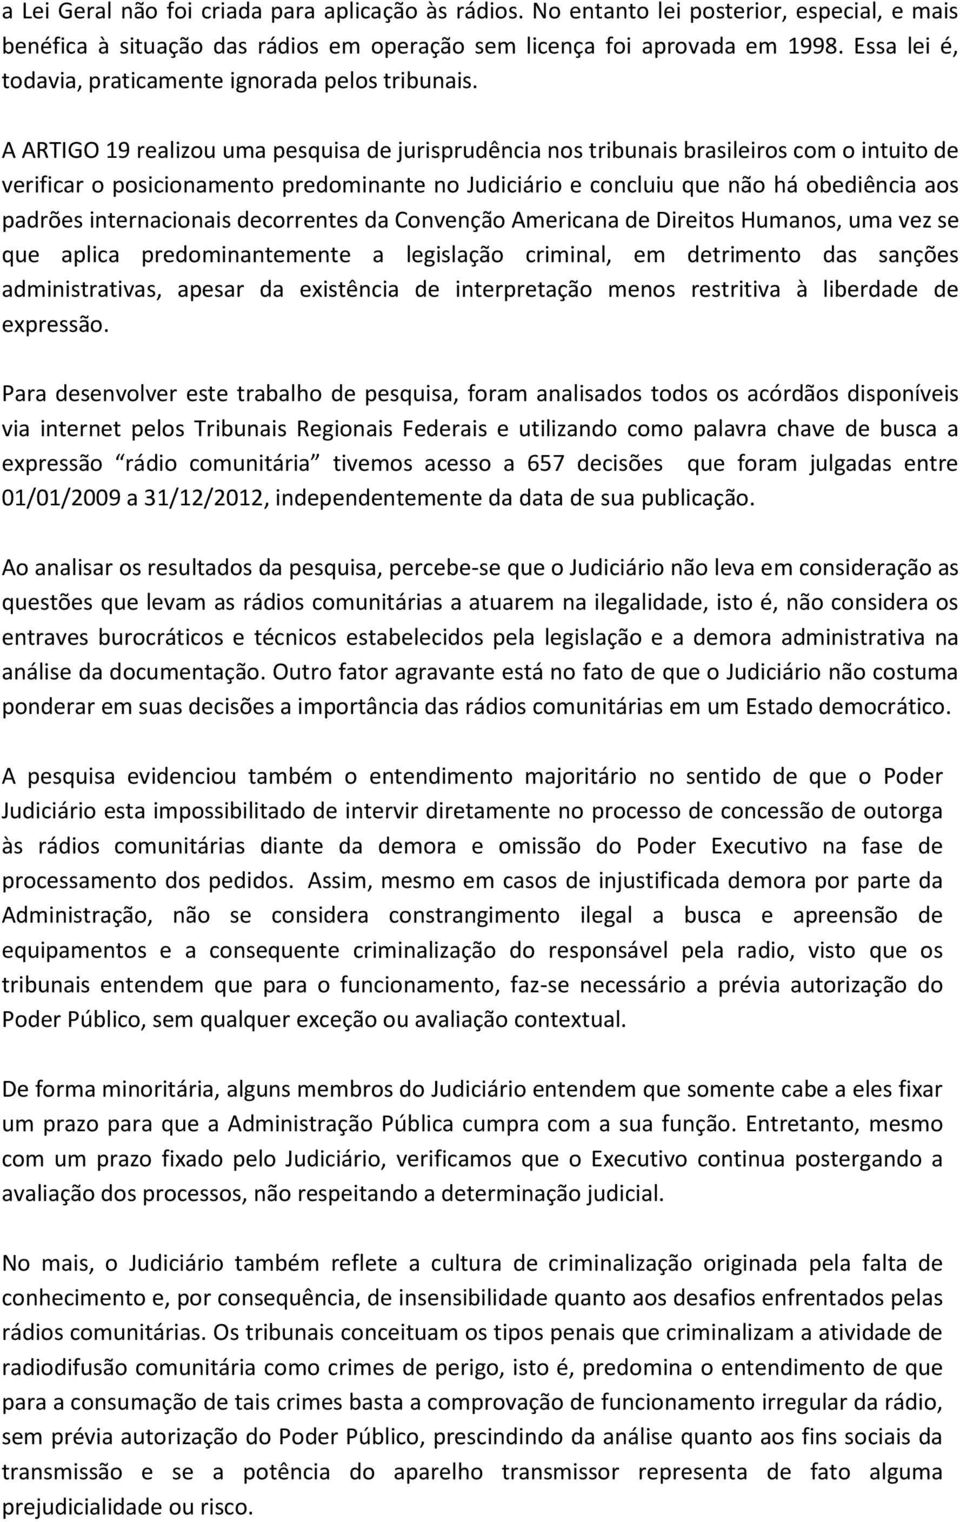 A ARTIGO 19 realizou uma pesquisa de jurisprudência nos tribunais brasileiros com o intuito de verificar o posicionamento predominante no Judiciário e concluiu que não há obediência aos padrões